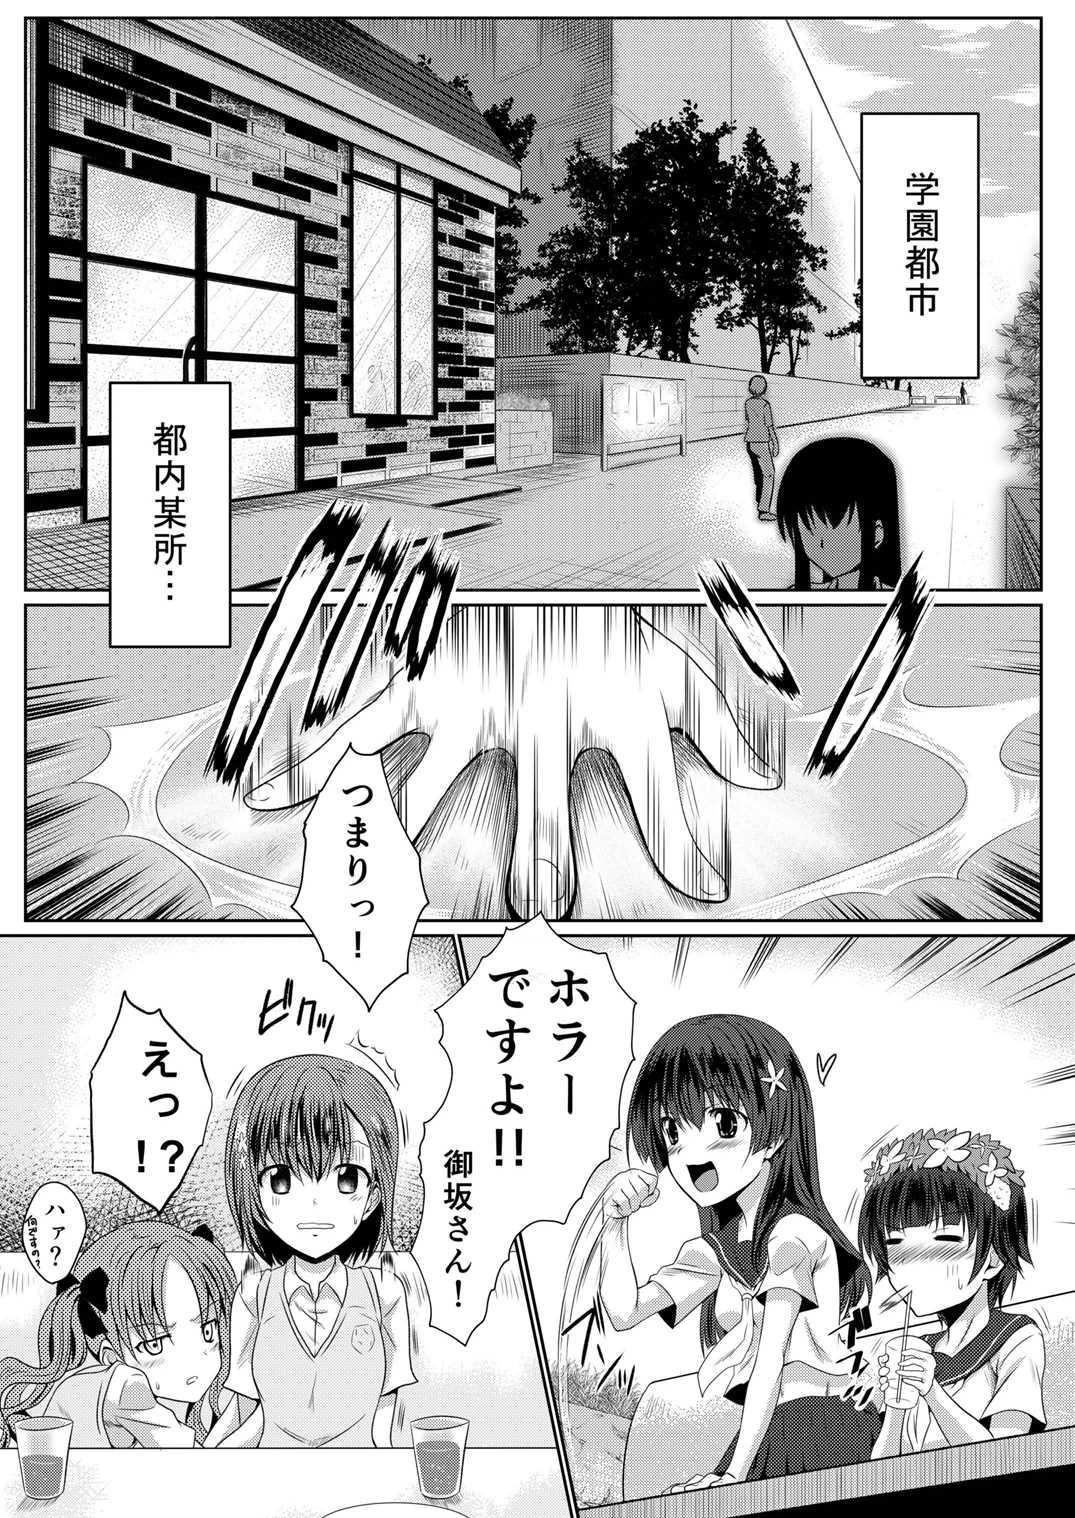 Blowjobs Hentai Kamen to Fushigi na Byouin - Toaru kagaku no railgun Toaru majutsu no index Analfucking - Page 4